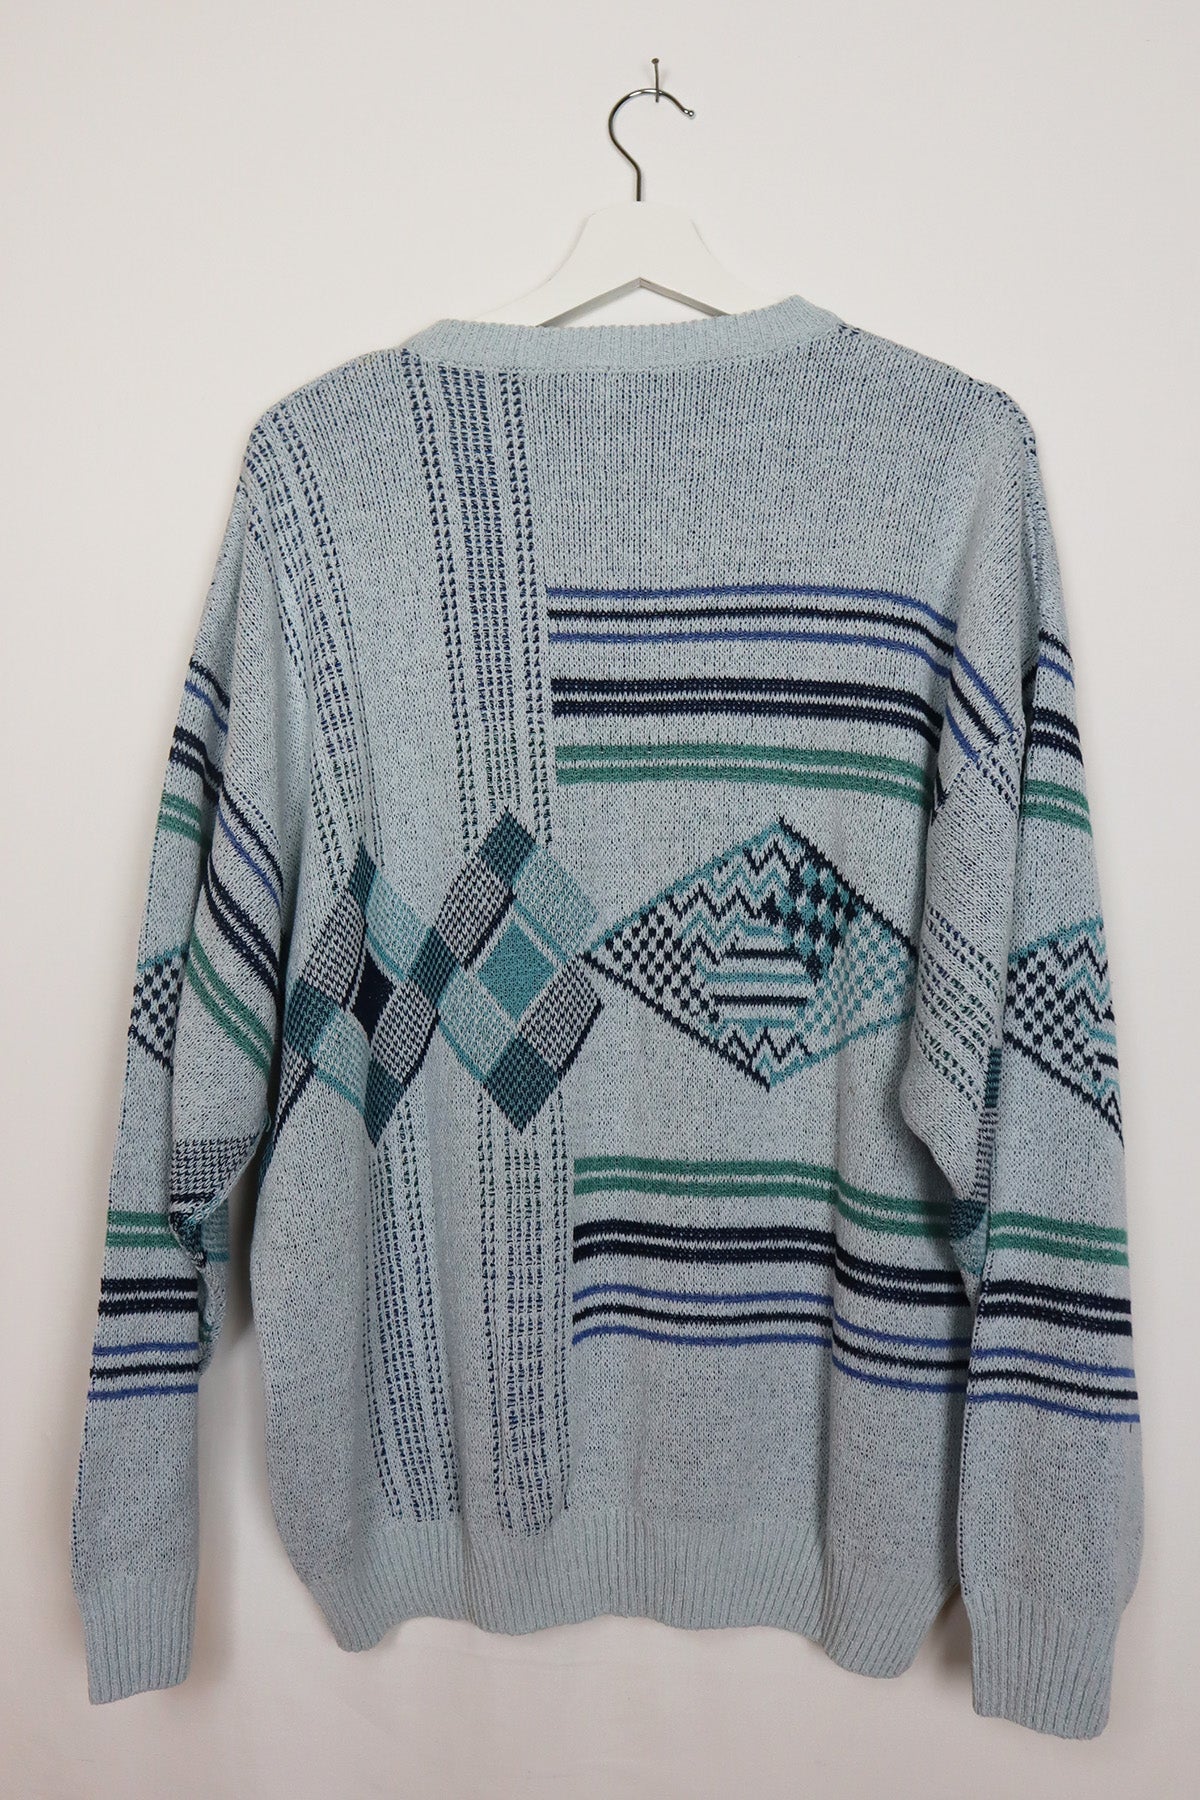 Unisex Vintage Pullover Grau/Blau ( Gr. M und Gr. L )